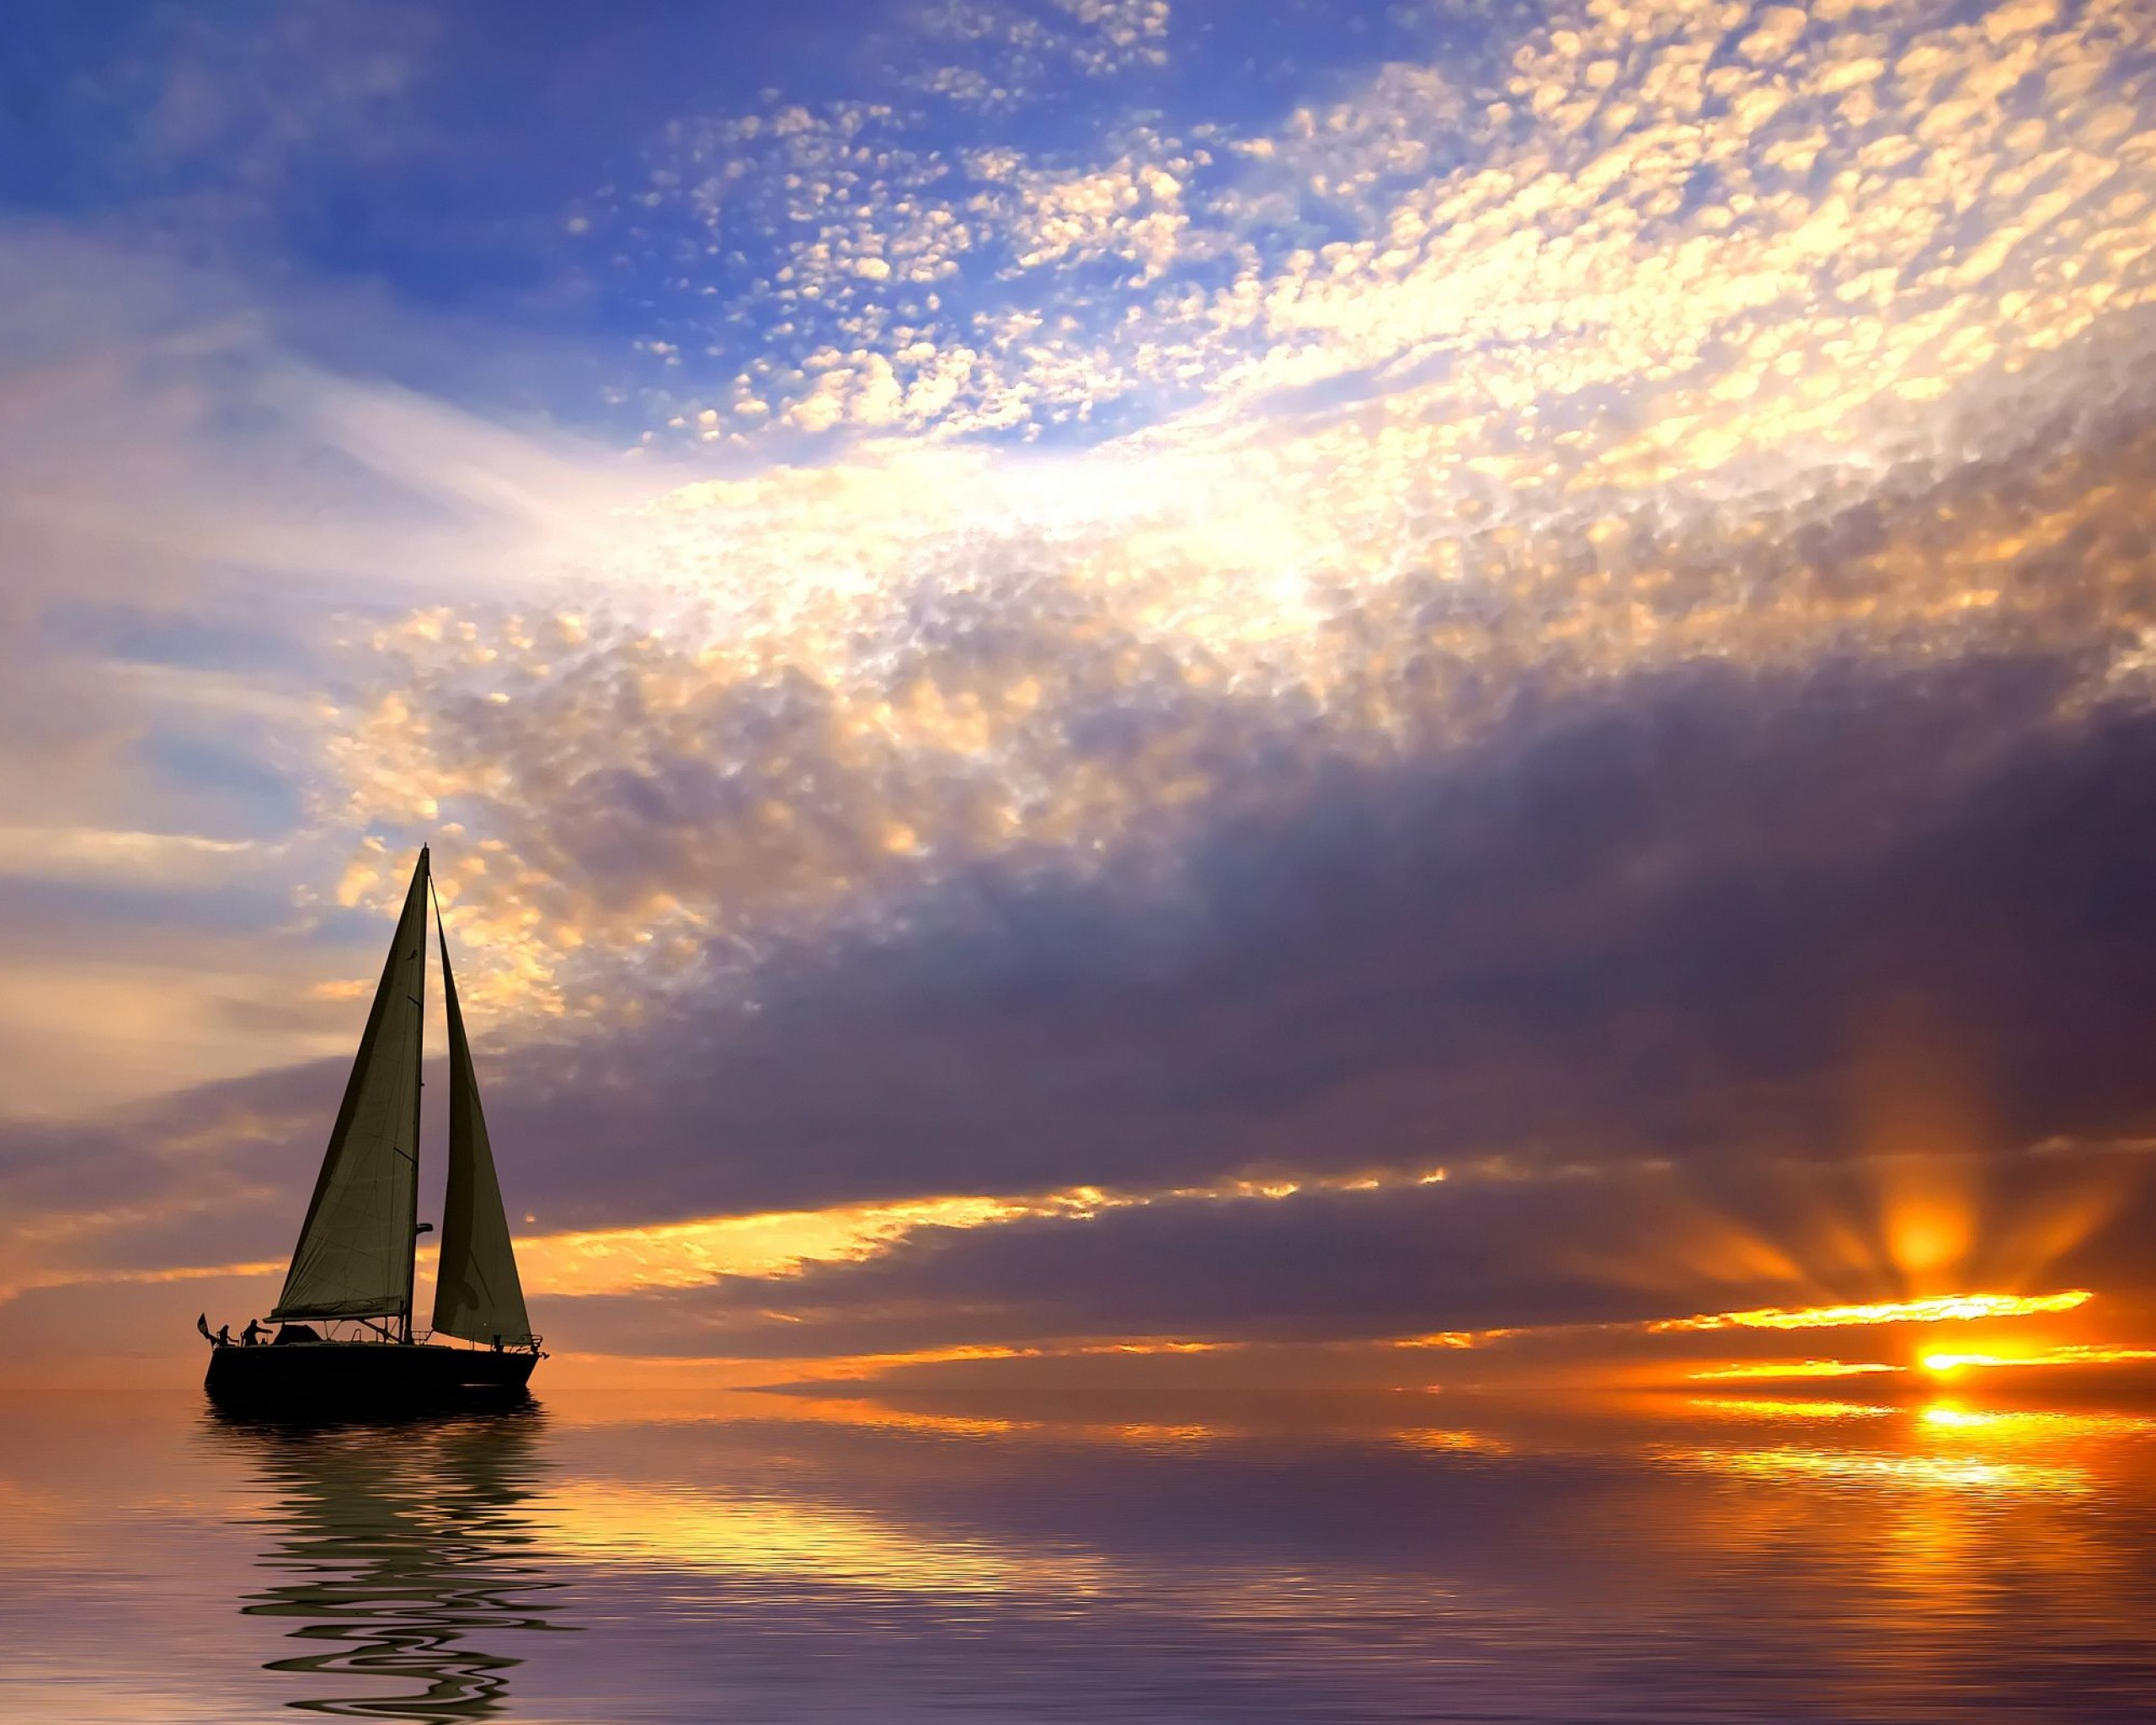 Sailing boat at sunset